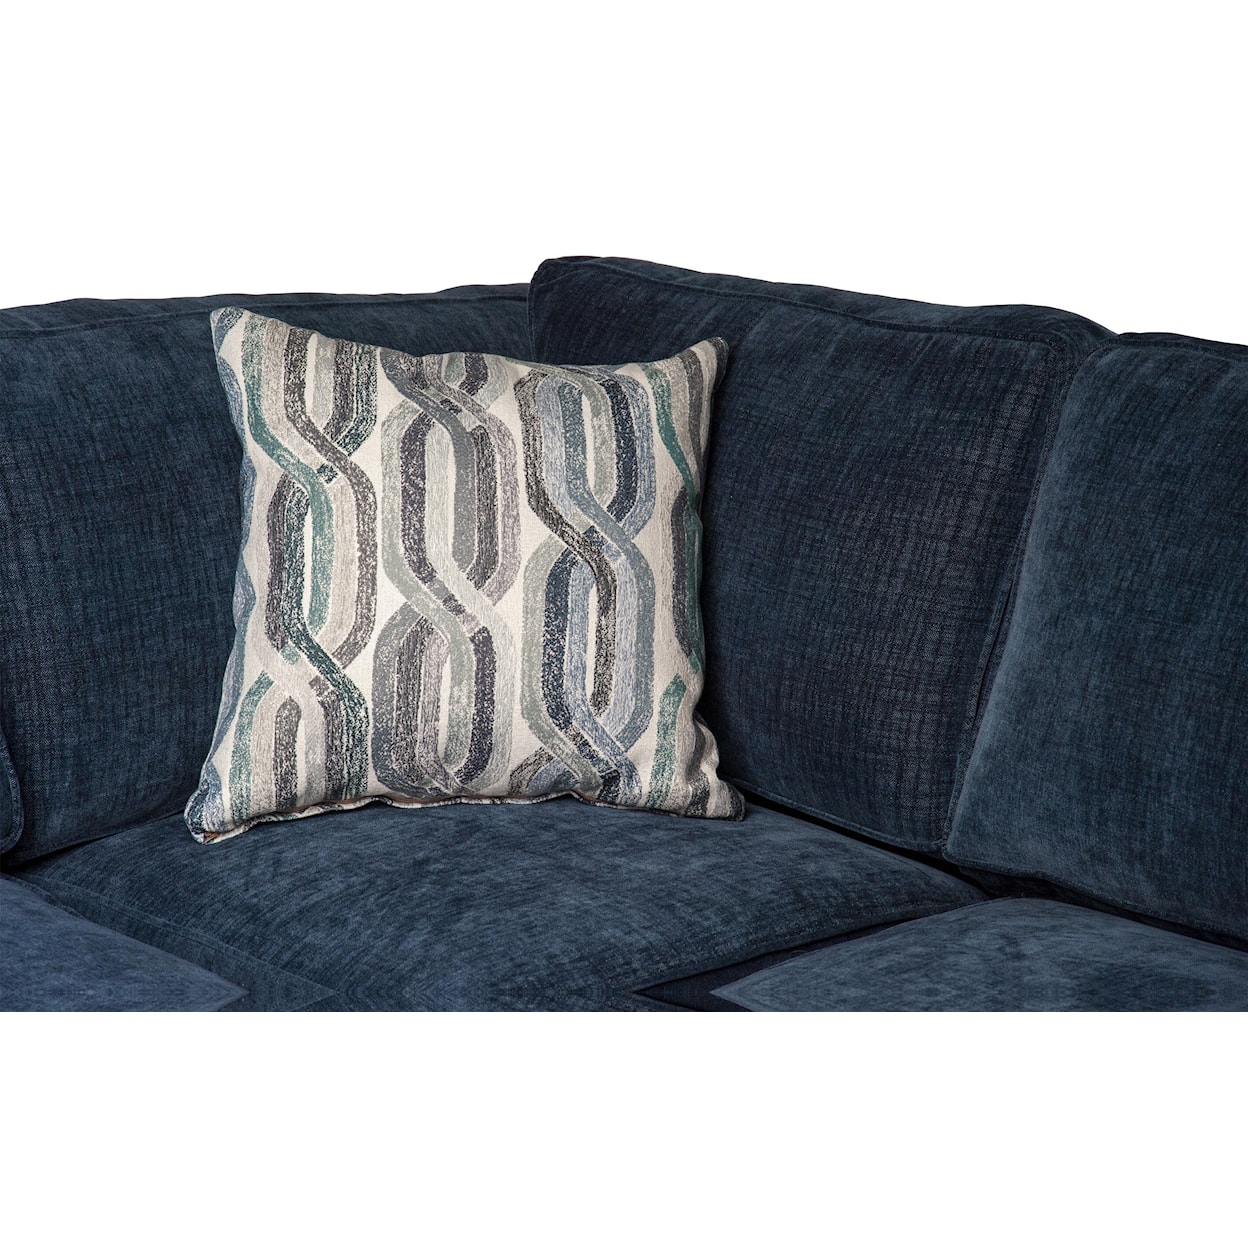 Jonathan Louis Linda Linda Sectional Sofa with Accent Pillows